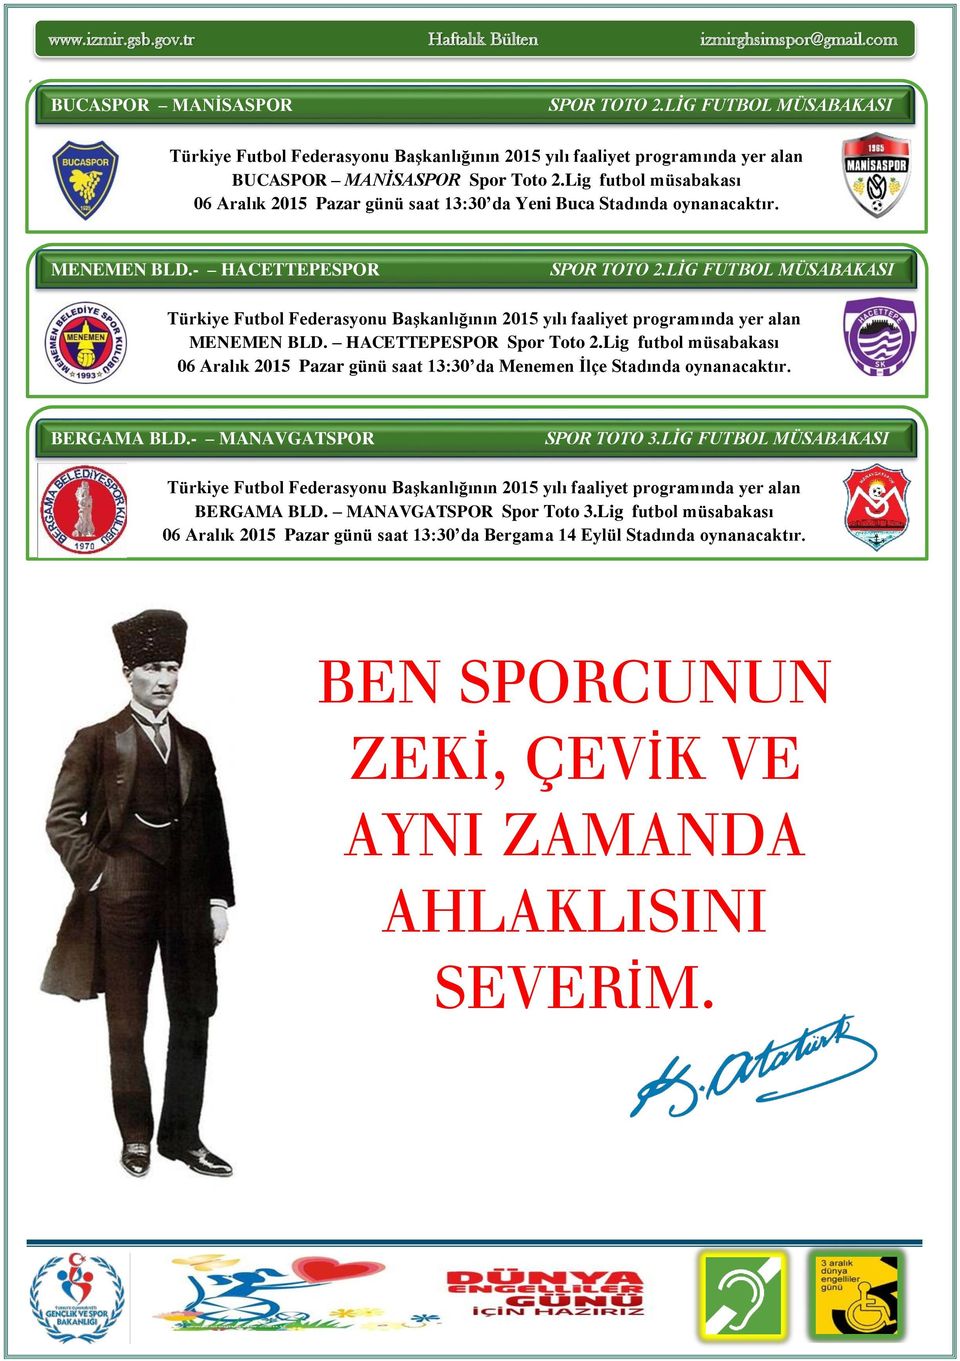 LİG FUTBOL MÜSABAKASI Türkiye Futbol Federasyonu Başkanlığının 2015 yılı faaliyet programında yer alan MENEMEN BLD. HACETTEPESPOR Spor Toto 2.